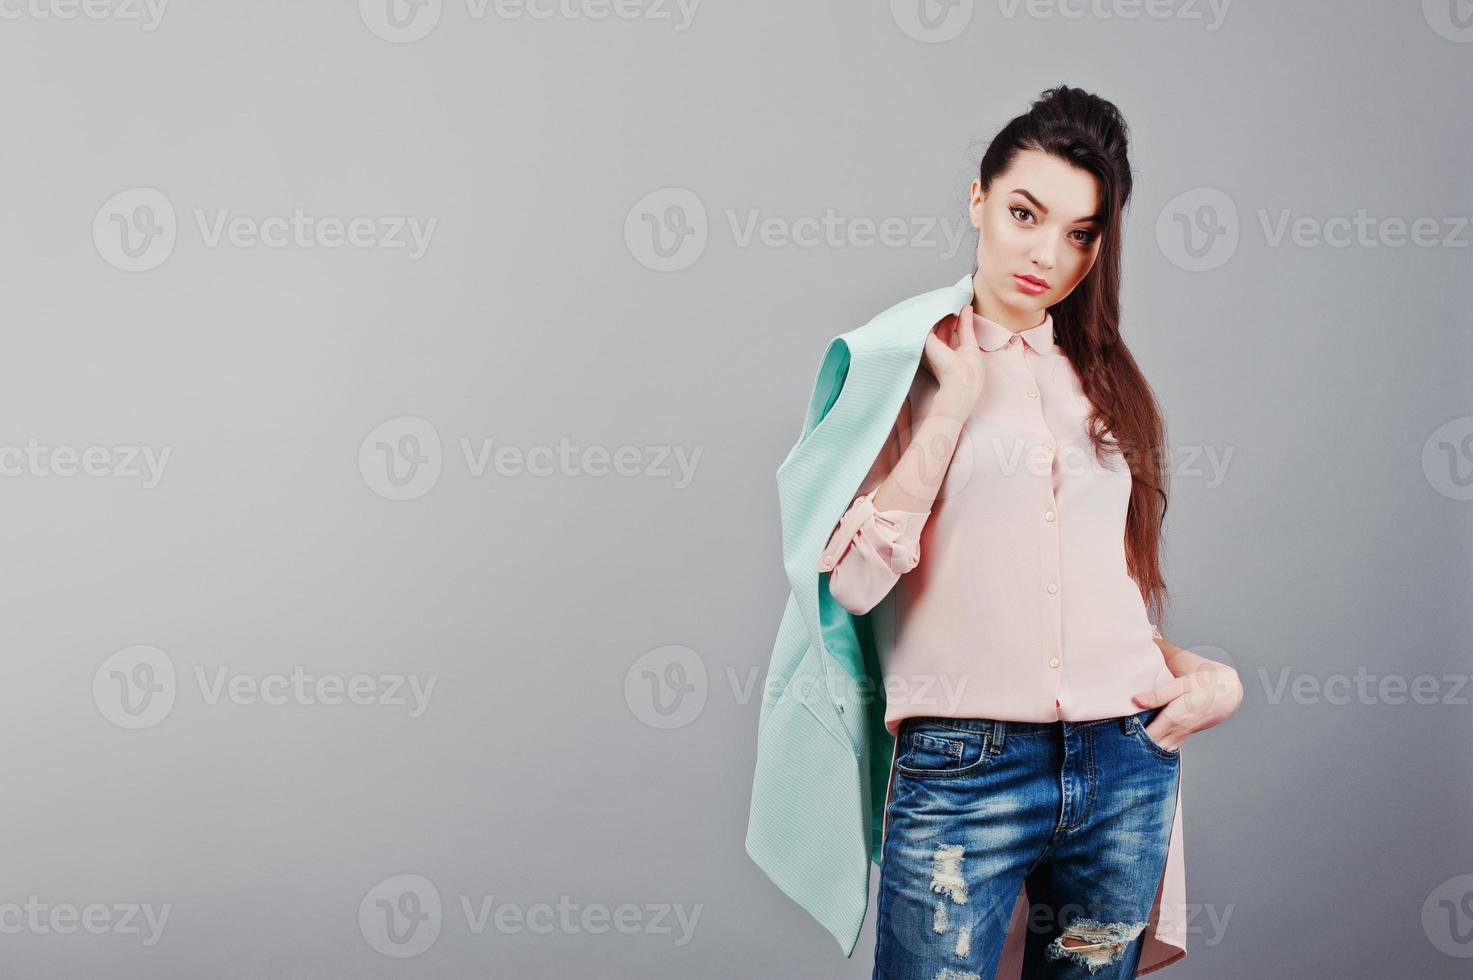 deslealtad Disipar Recoger hojas retrato de una joven morena con blusa rosa, chaqueta turquesa, jeans rotos.  foto de estudio de moda 5975556 Foto de stock en Vecteezy